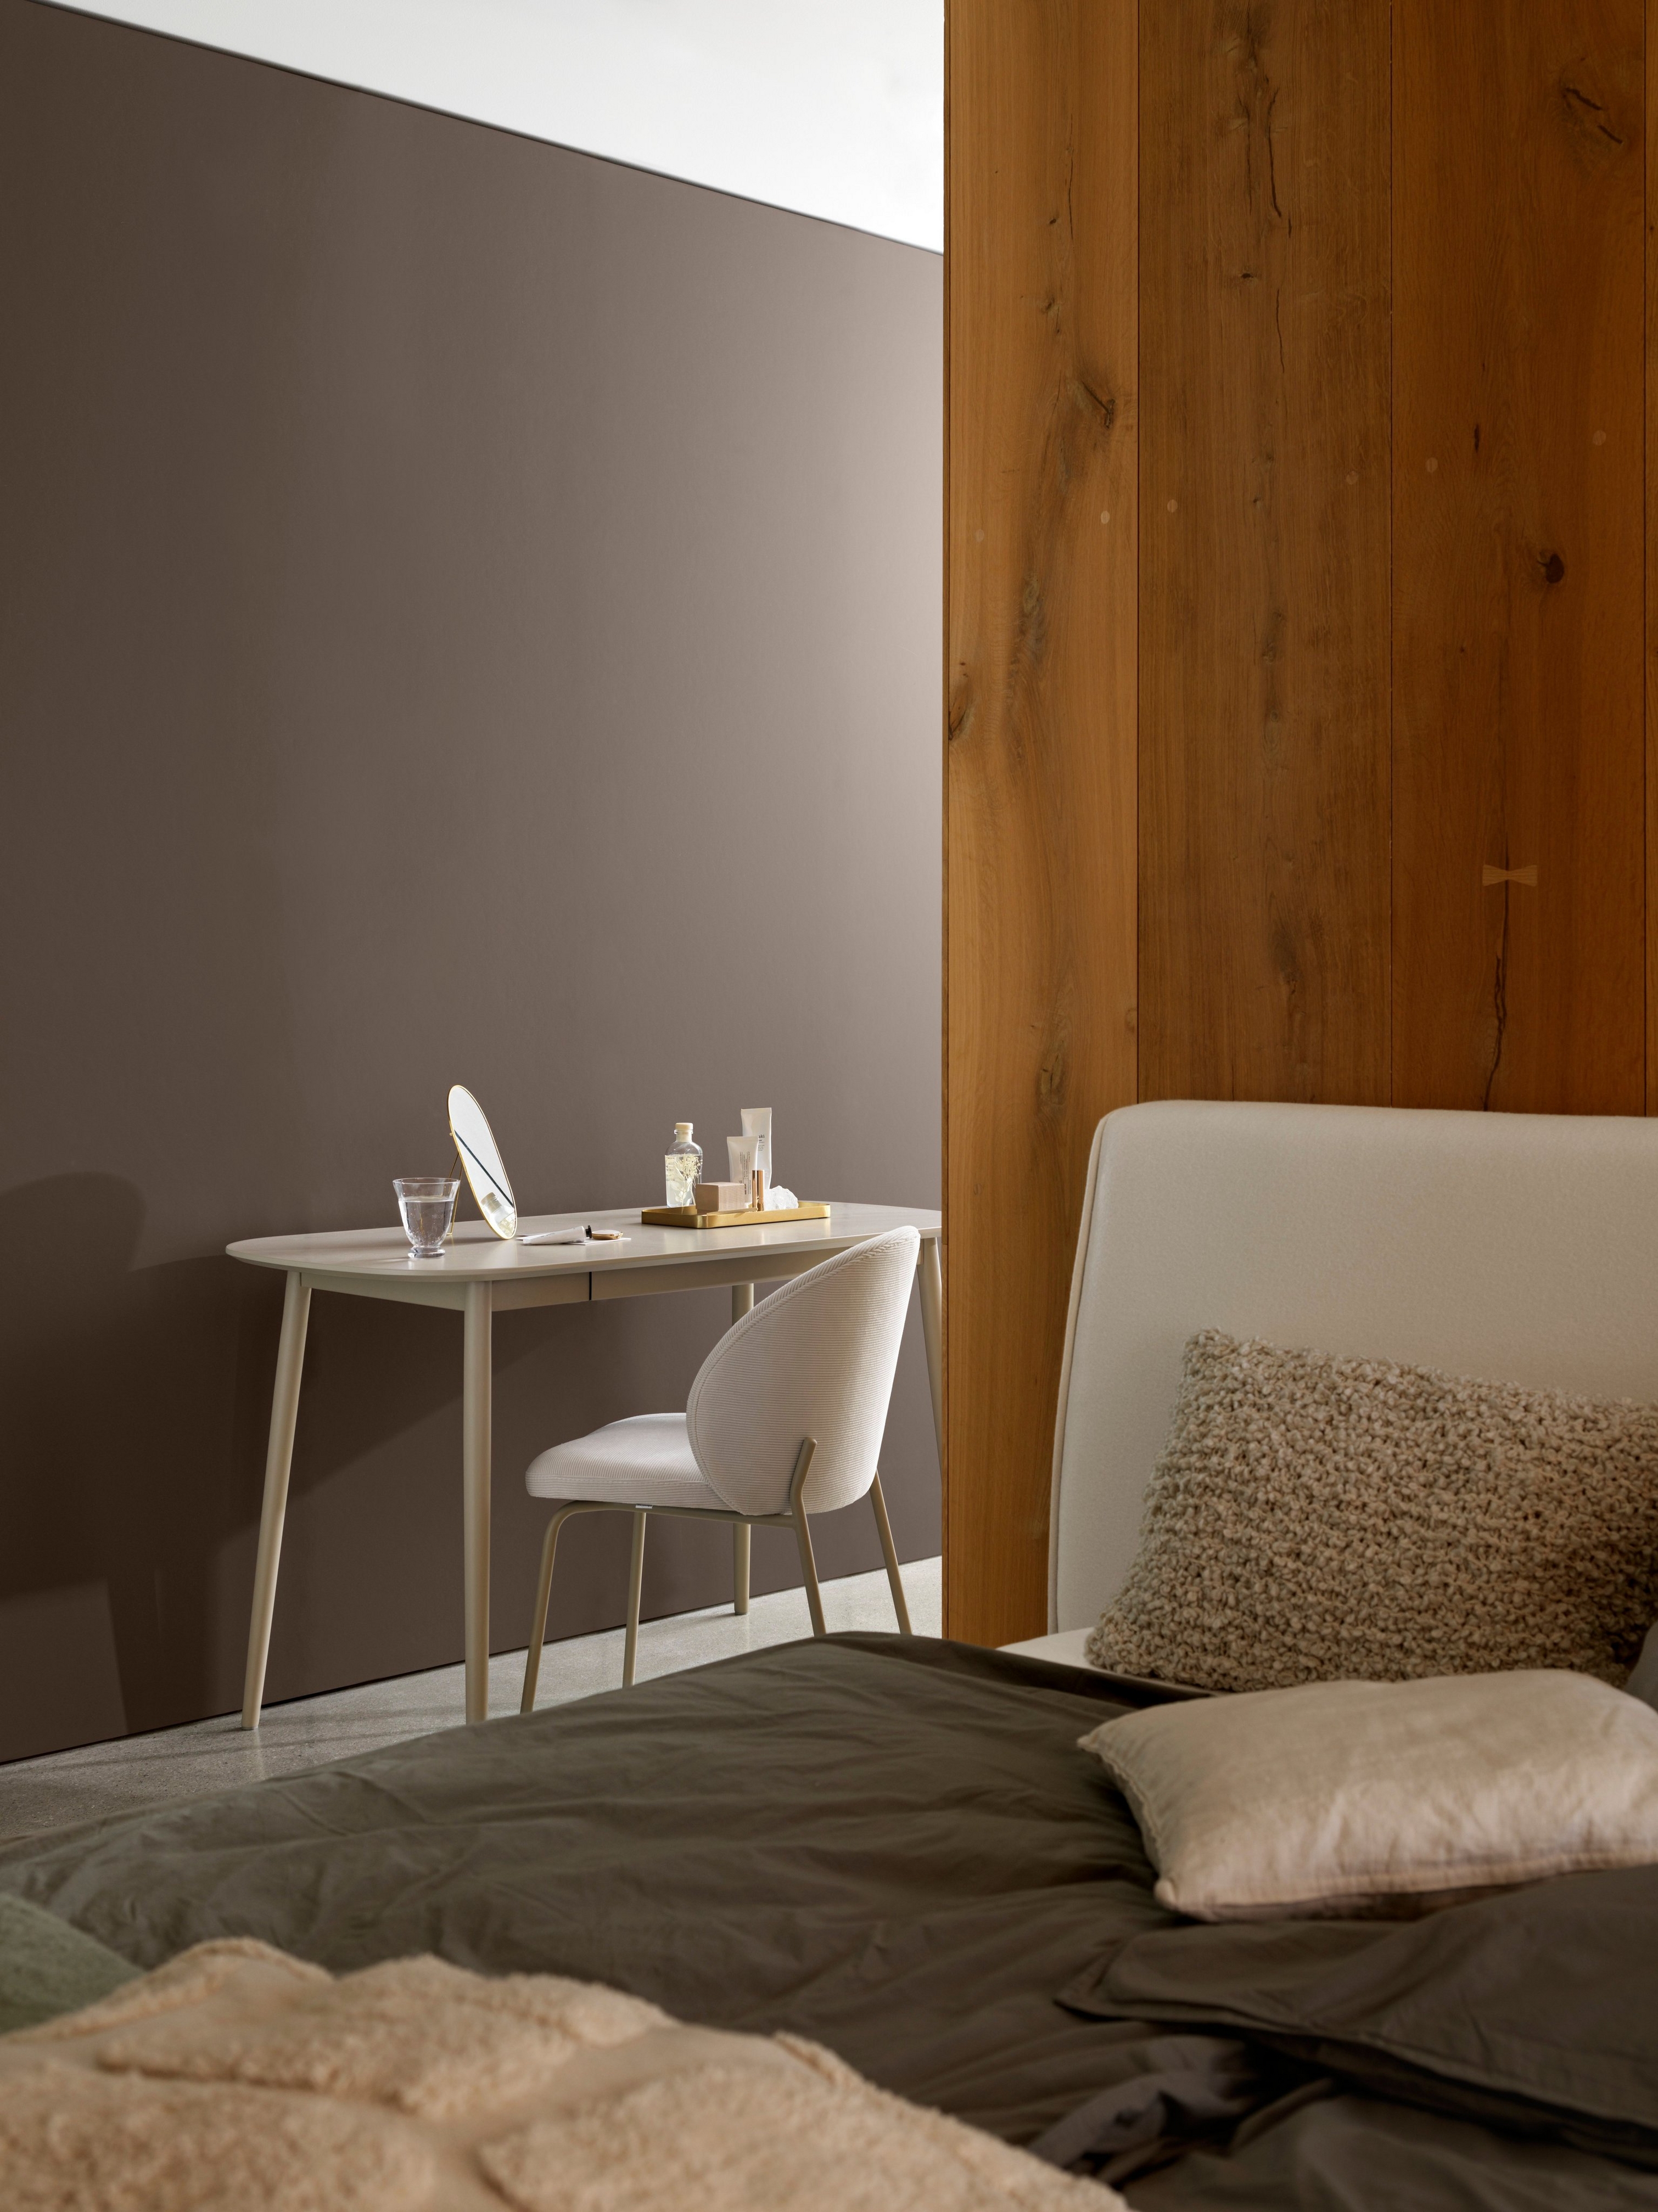 臥室角落的木板旁有簡單的辦公桌、椅子和舒適寢具。